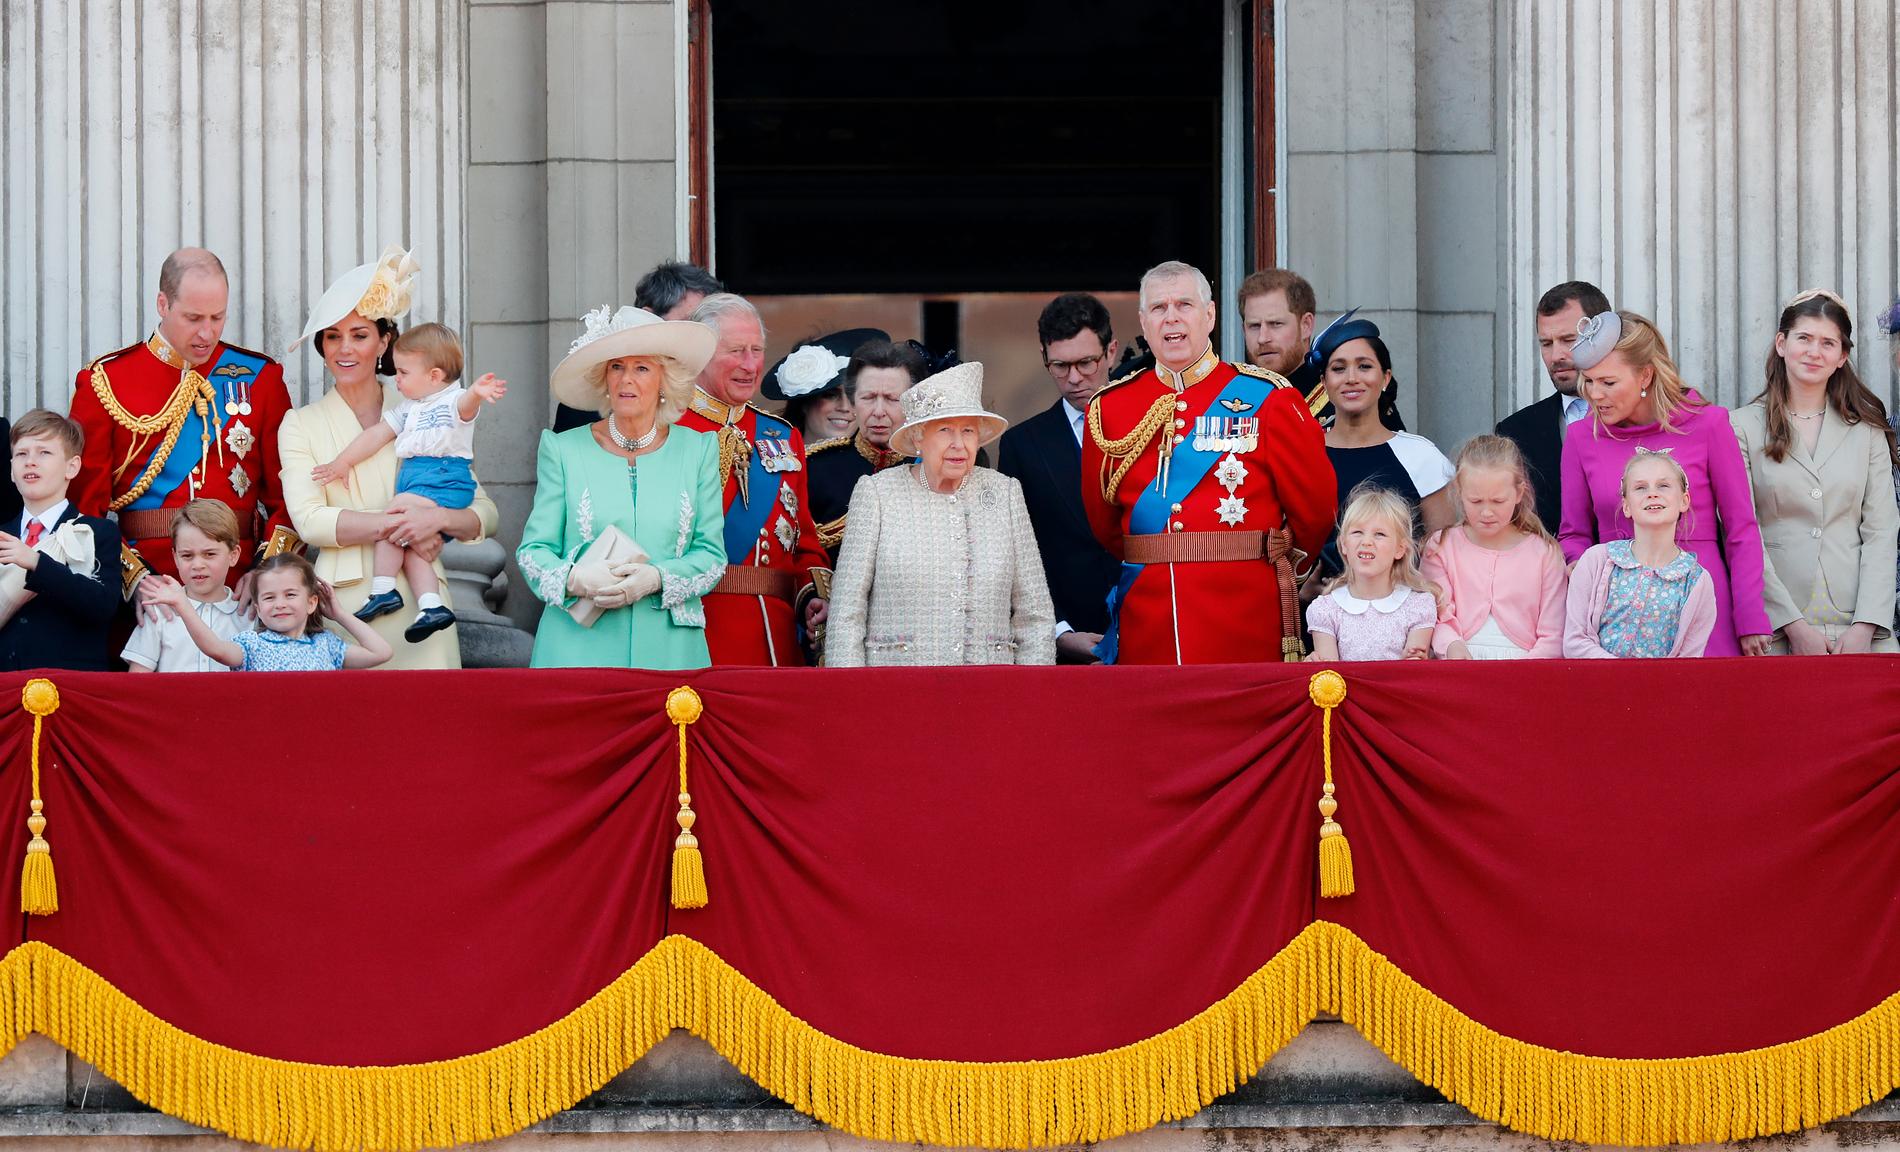 Prins Charles ryktas vilja banta det brittiska kungahuset när han tar över tronen – precis som kung Carl Gustaf gjort i Sverige.